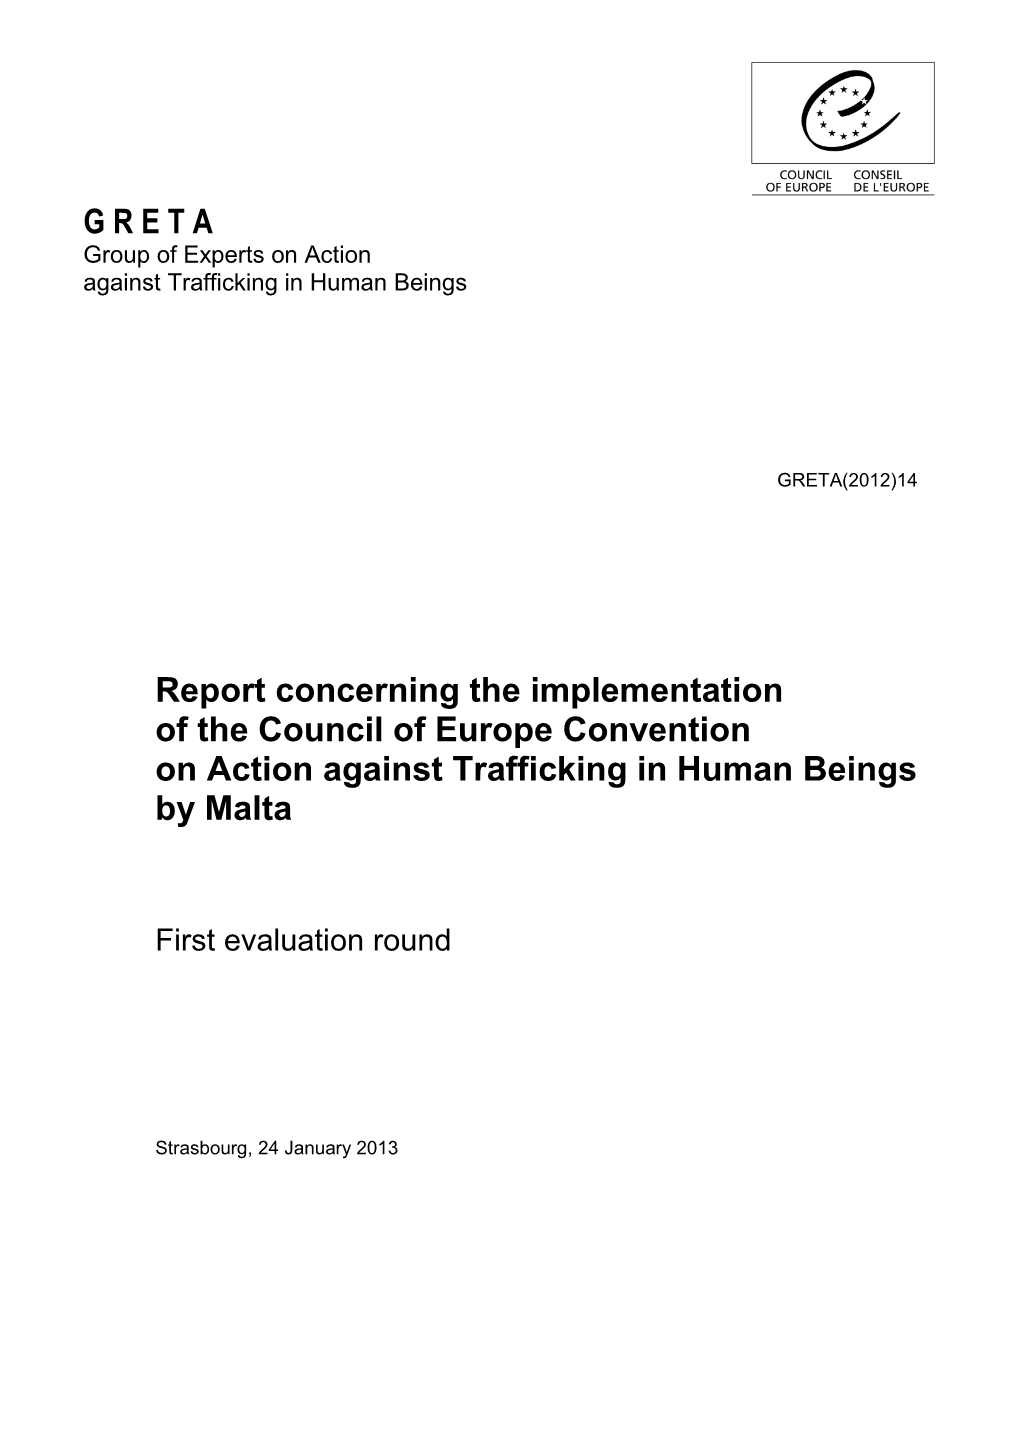 (GRETA) Malta Report 2013